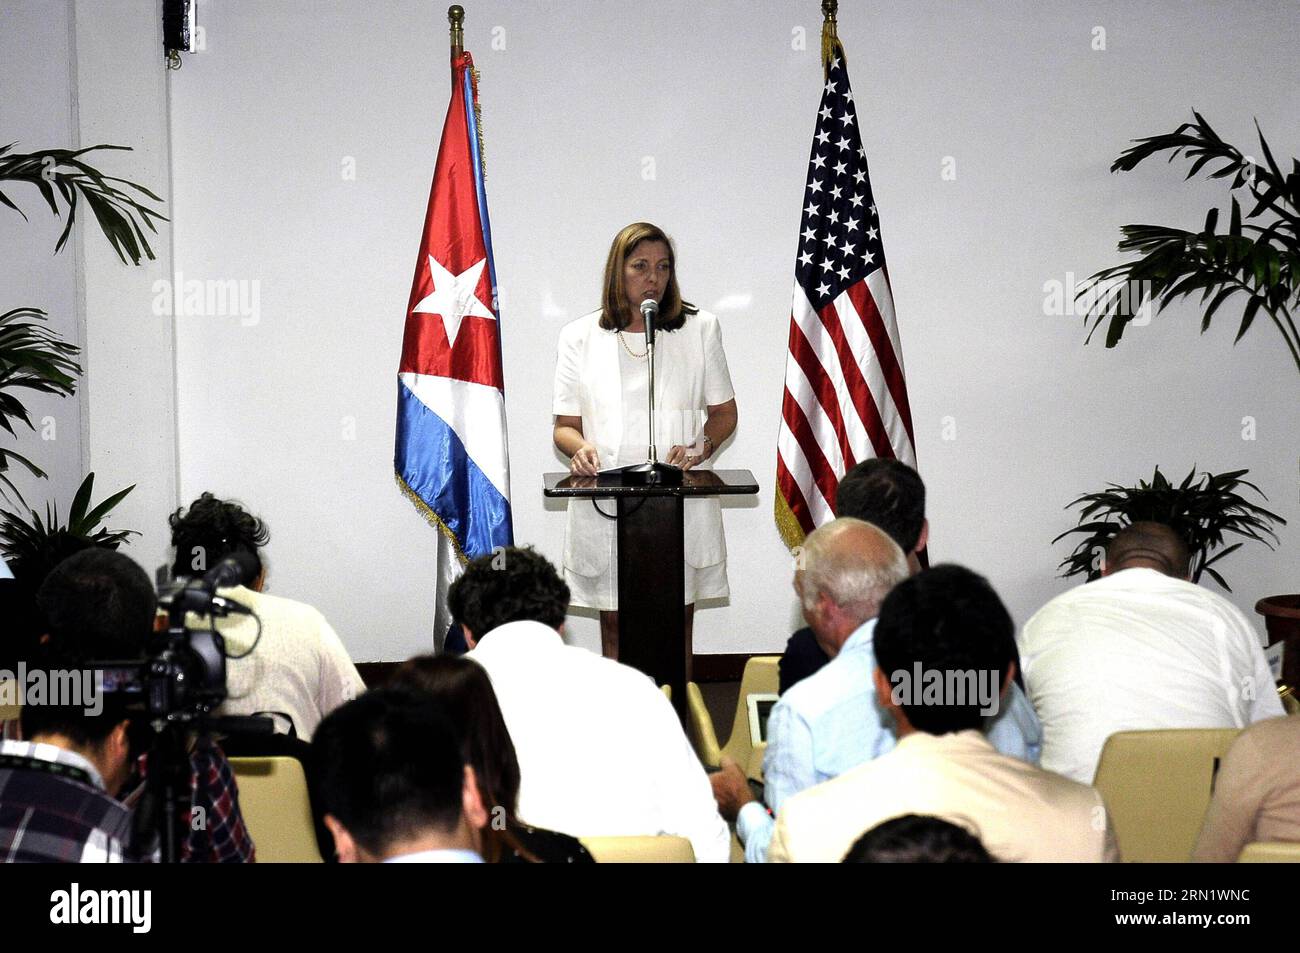 (150122) -- HAVANNA, 22. Januar 2015 -- Josefina Vidal Ferreira, Generaldirektorin für die Vereinigten Staaten des kubanischen Ministers für auswärtige Angelegenheiten, spricht auf einer Pressekonferenz zum Thema Wiederherstellung diplomatischer Beziehungen zwischen Kuba und den USA im Kongresspalast von Havanna, Kuba, 22. Januar 2015. Delegationen aus Kuba und den USA führten während des zweitägigen Treffens hier historische Gespräche auf hoher Ebene über Fragen der Wiederherstellung der Beziehungen und der Einwanderung. ) (jg) KUBA-HAVANNA-US-DIPLOMATISCHE BEZIEHUNGEN-WIEDERHERSTELLUNG-PRESSE Str PUBLICATIONxNOTxINxCHN HAVANNA 22. Januar 2015 Josefina Vidal Ferreira Generaldirektorin für die Vereinigten Staaten Stockfoto